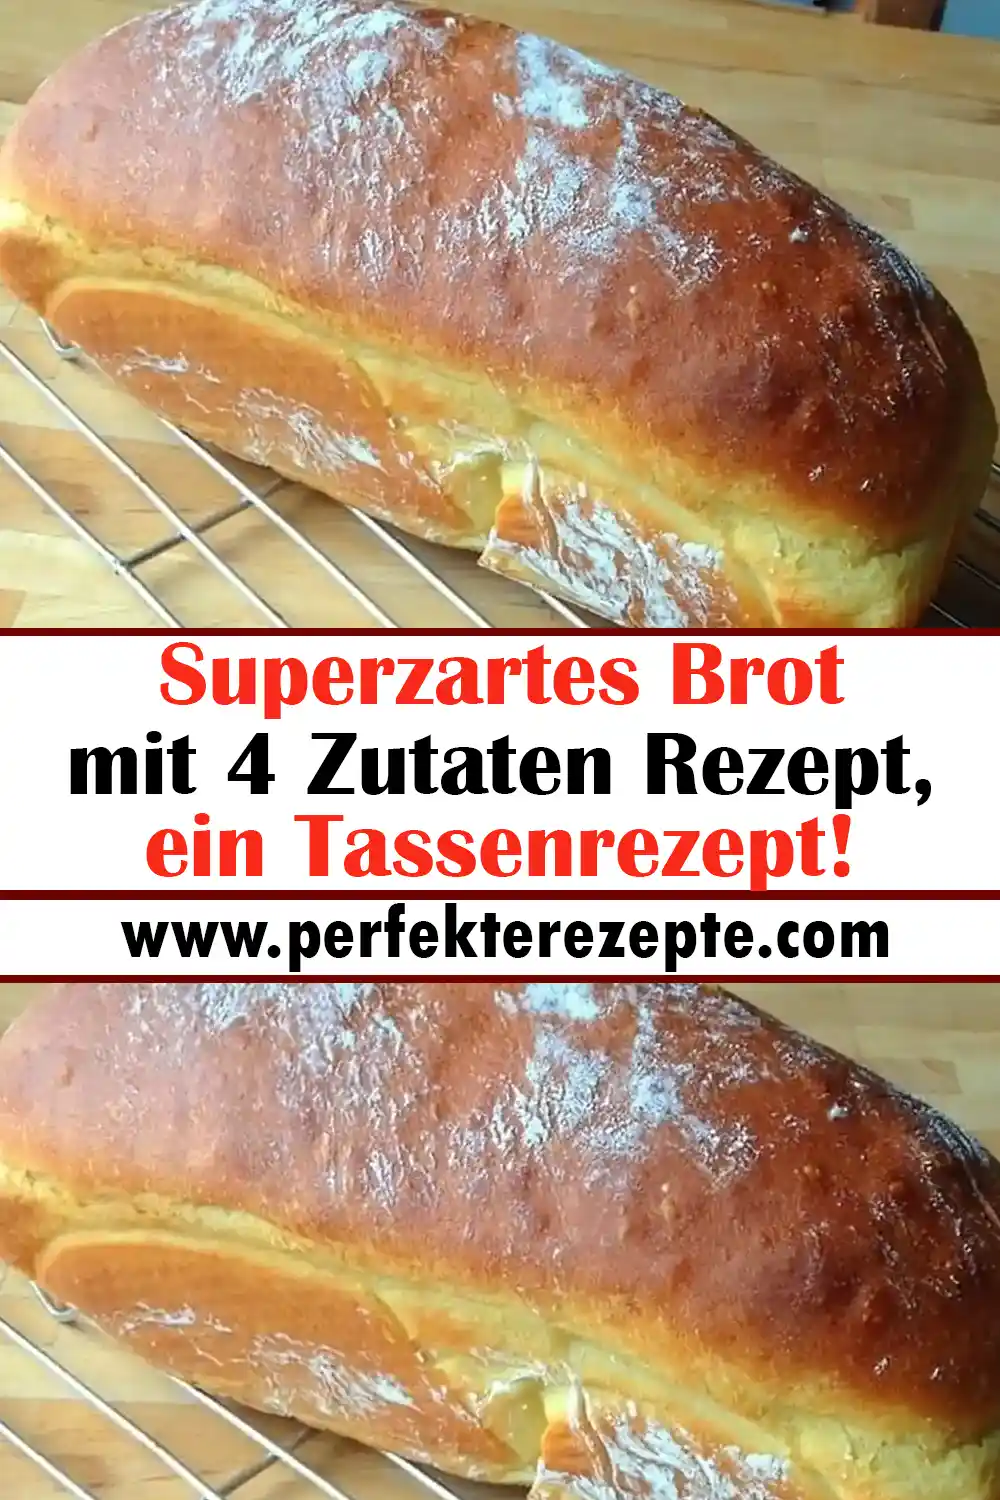 Superzartes Brot mit 4 Zutaten Rezept, ein Tassenrezept!